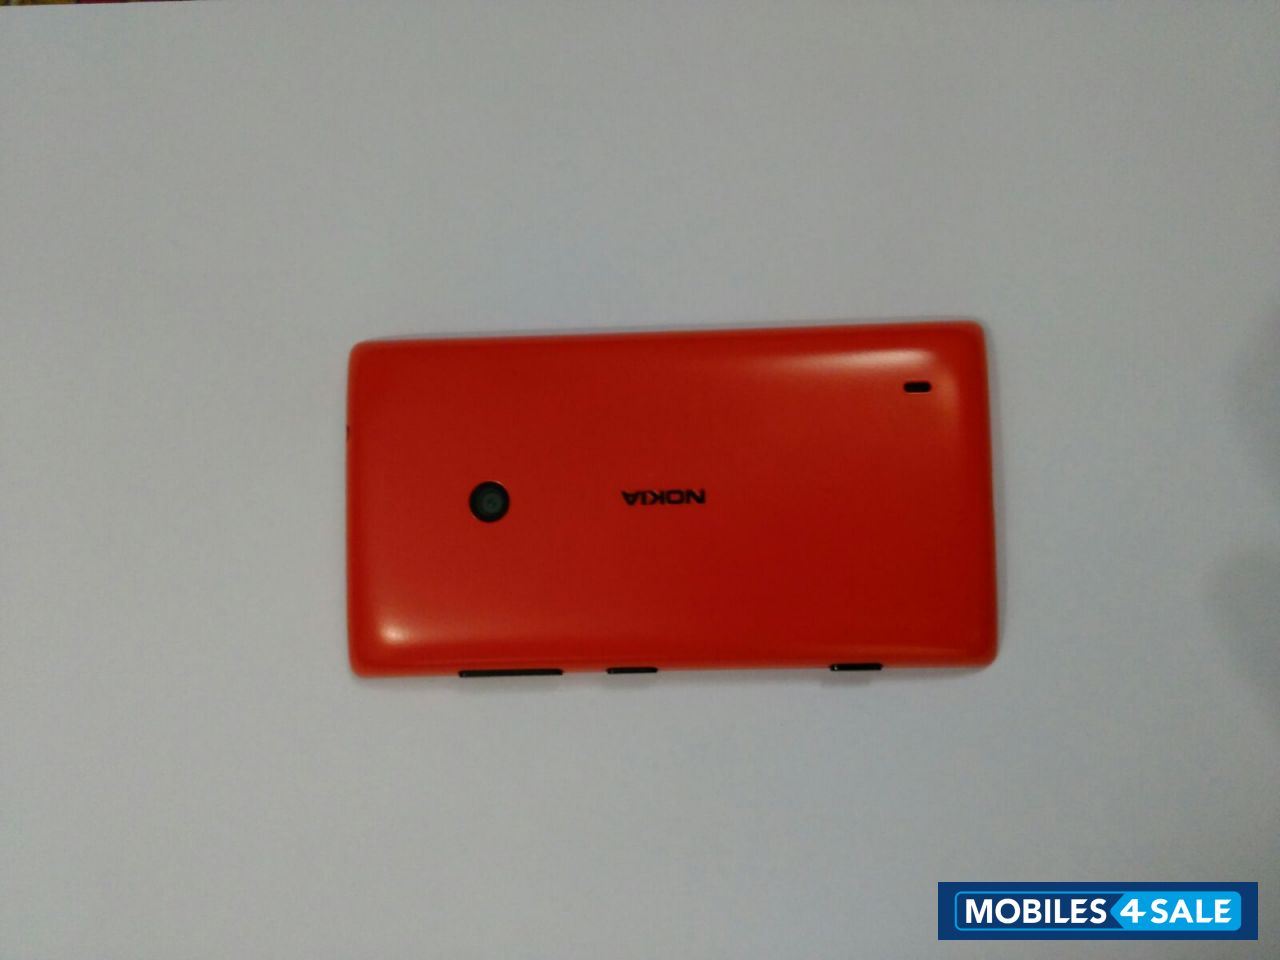 Red Nokia Lumia 520